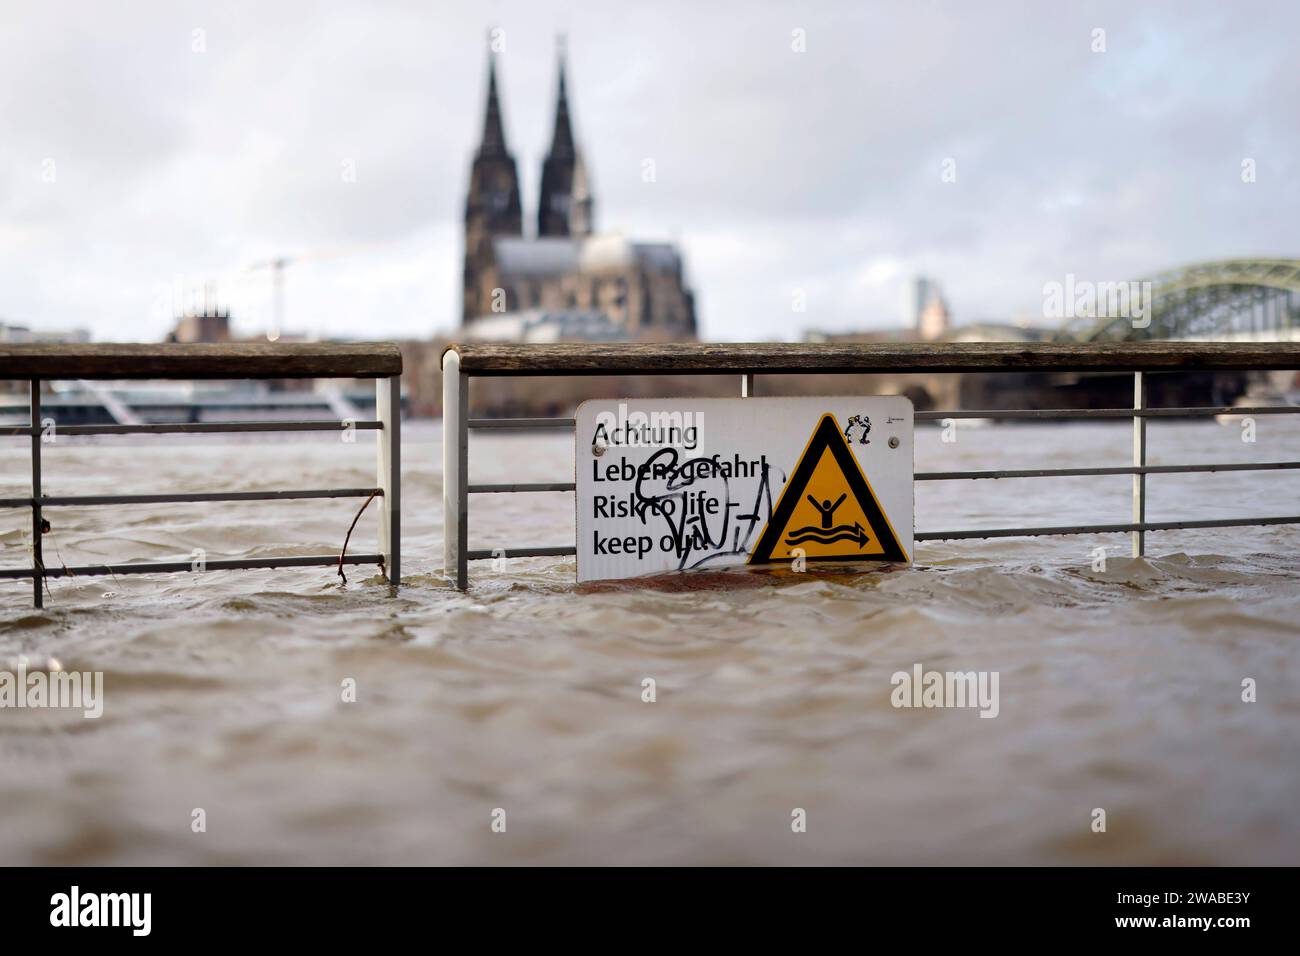 Impression vom Hochwasser in Köln am Ufer von Köln-Deutz: Am Ufer des Rhein sind Teile des Rheinboulevard, Gehwege und Wiesen überflutet. Absperrungen weisen auf Lebensgefahr bei Hochwasser Hin. DAS nasse Wetter Hat die Pegel von Bächen und Flüssen steigen lassen. Böden sind aufgeweicht und können kein weiteres Wasser fassen. für die kommenden Tage wird Dauerregen befürchtet. Themenbild, Symbolbild Köln, 03.01.2023 NRW Deutschland *** impressione delle inondazioni a Colonia sulle rive di Colonia Deutz sulle rive del Reno, parti del RheinBoulevard, sentieri e prati sono allagati Bar Foto Stock